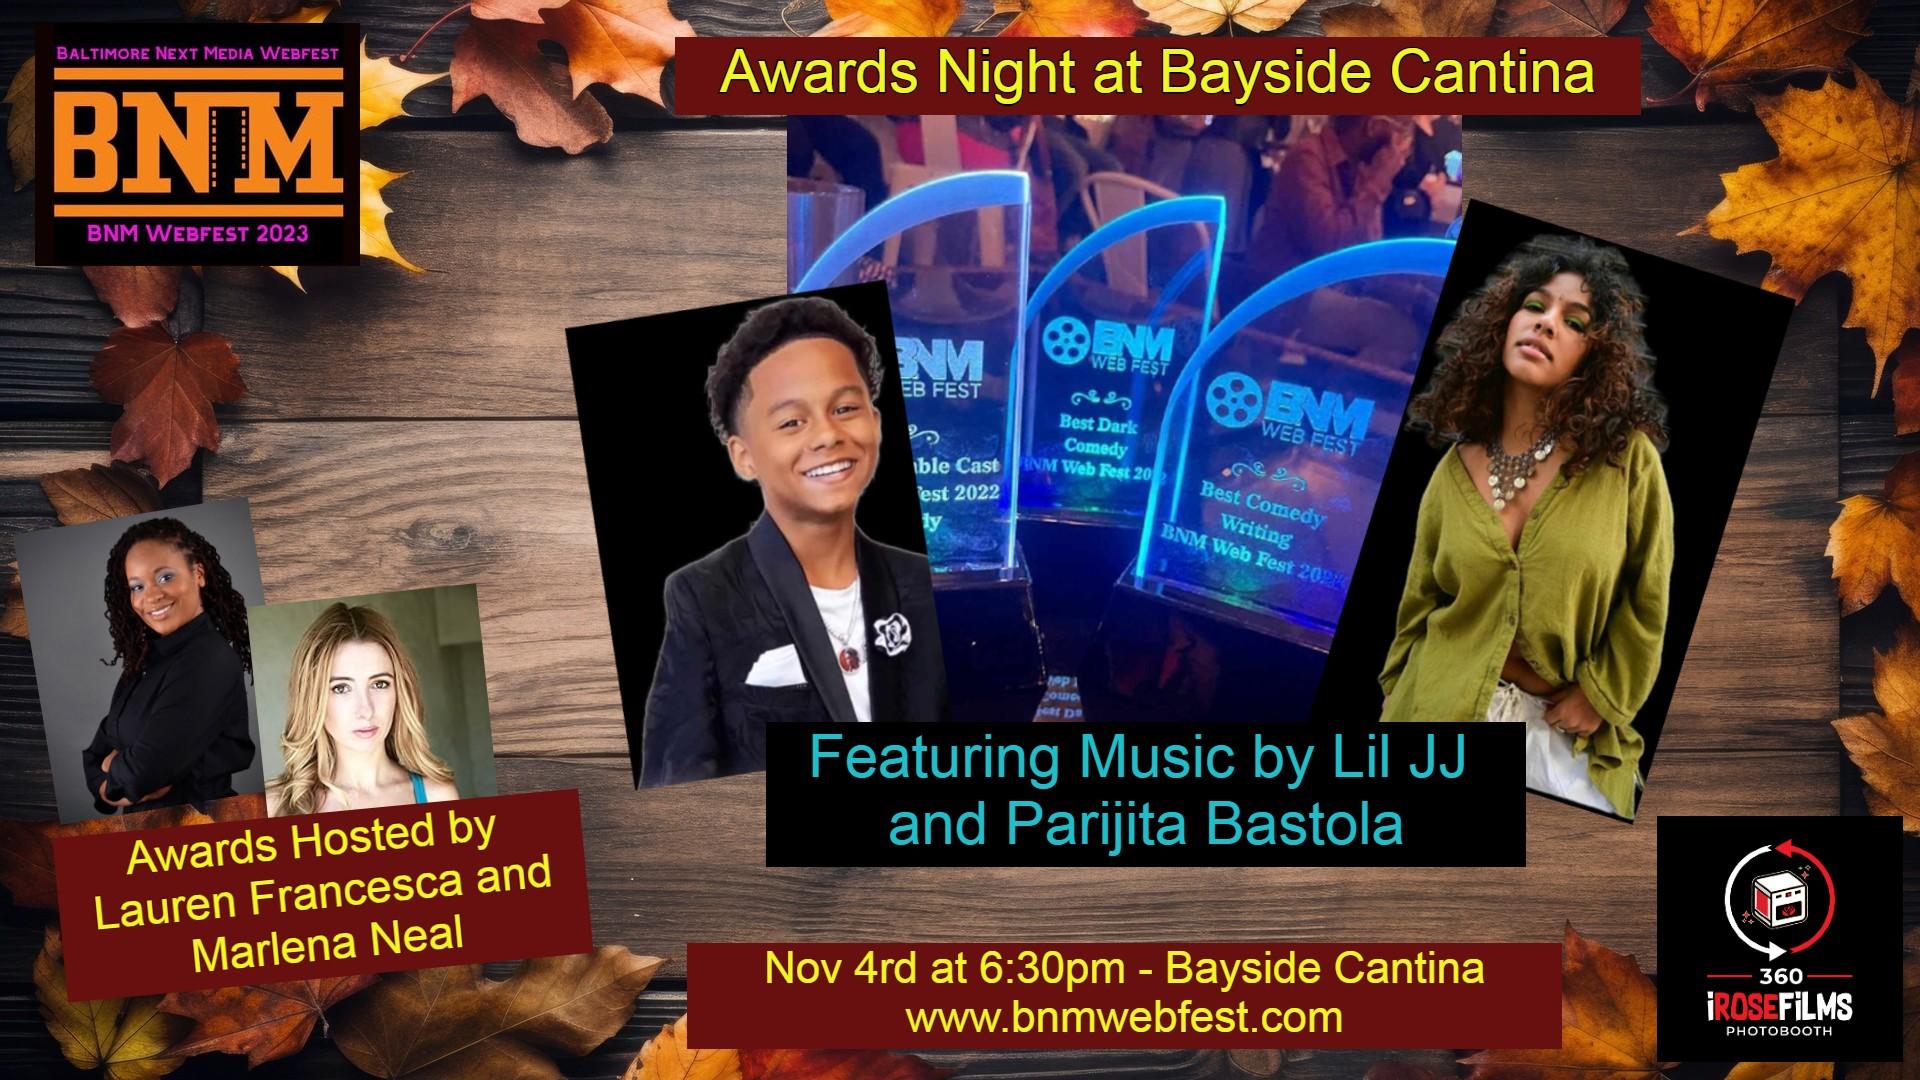 Awards Night At the Bayside Cantina